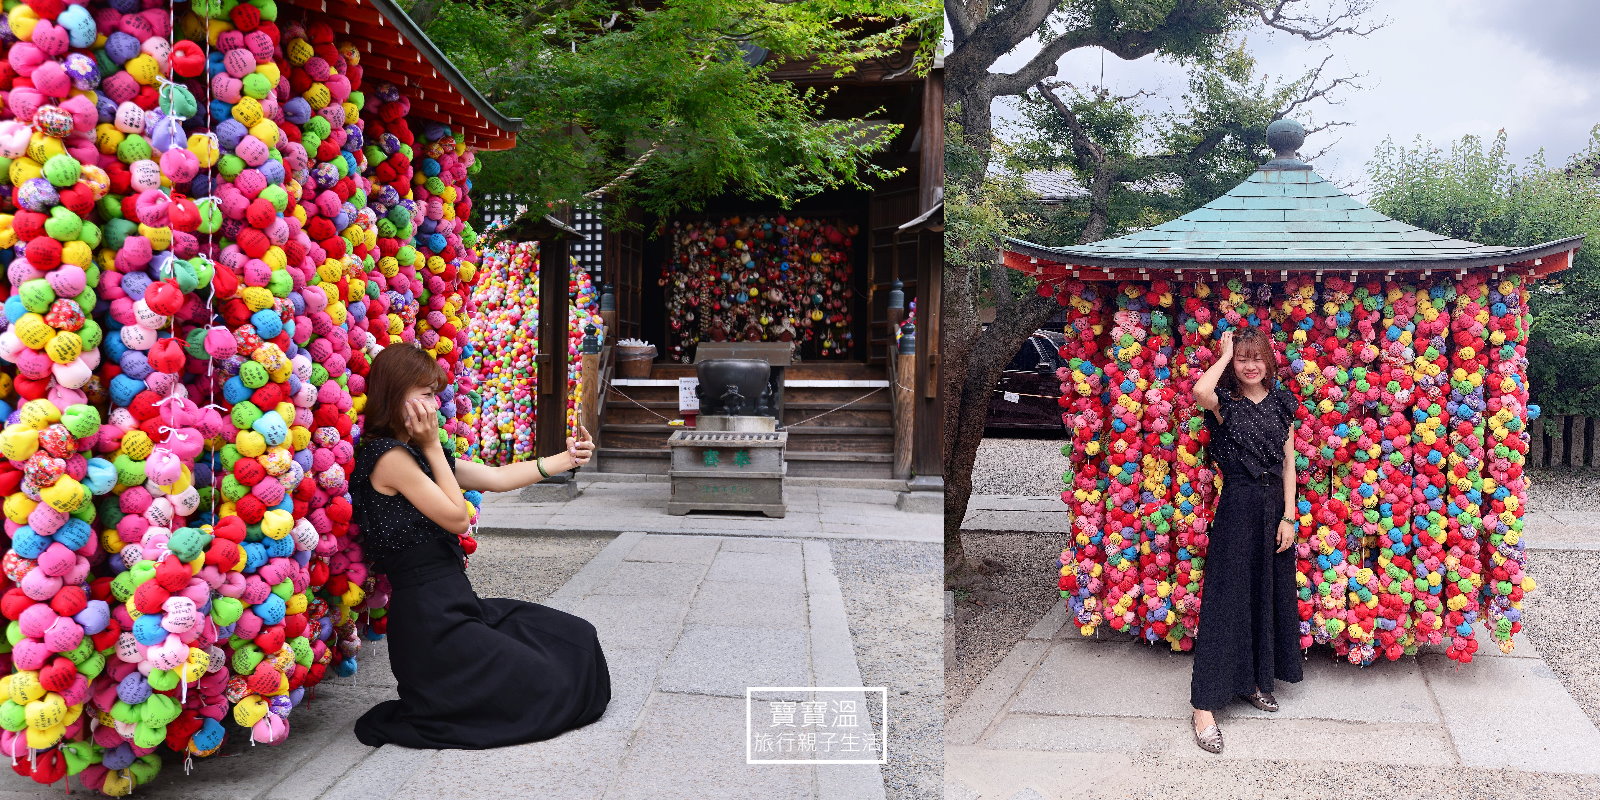 【京都景點】金剛寺八坂庚申堂, 繽紛彩球許願的猴子神社, 女生們超愛拍照打卡點